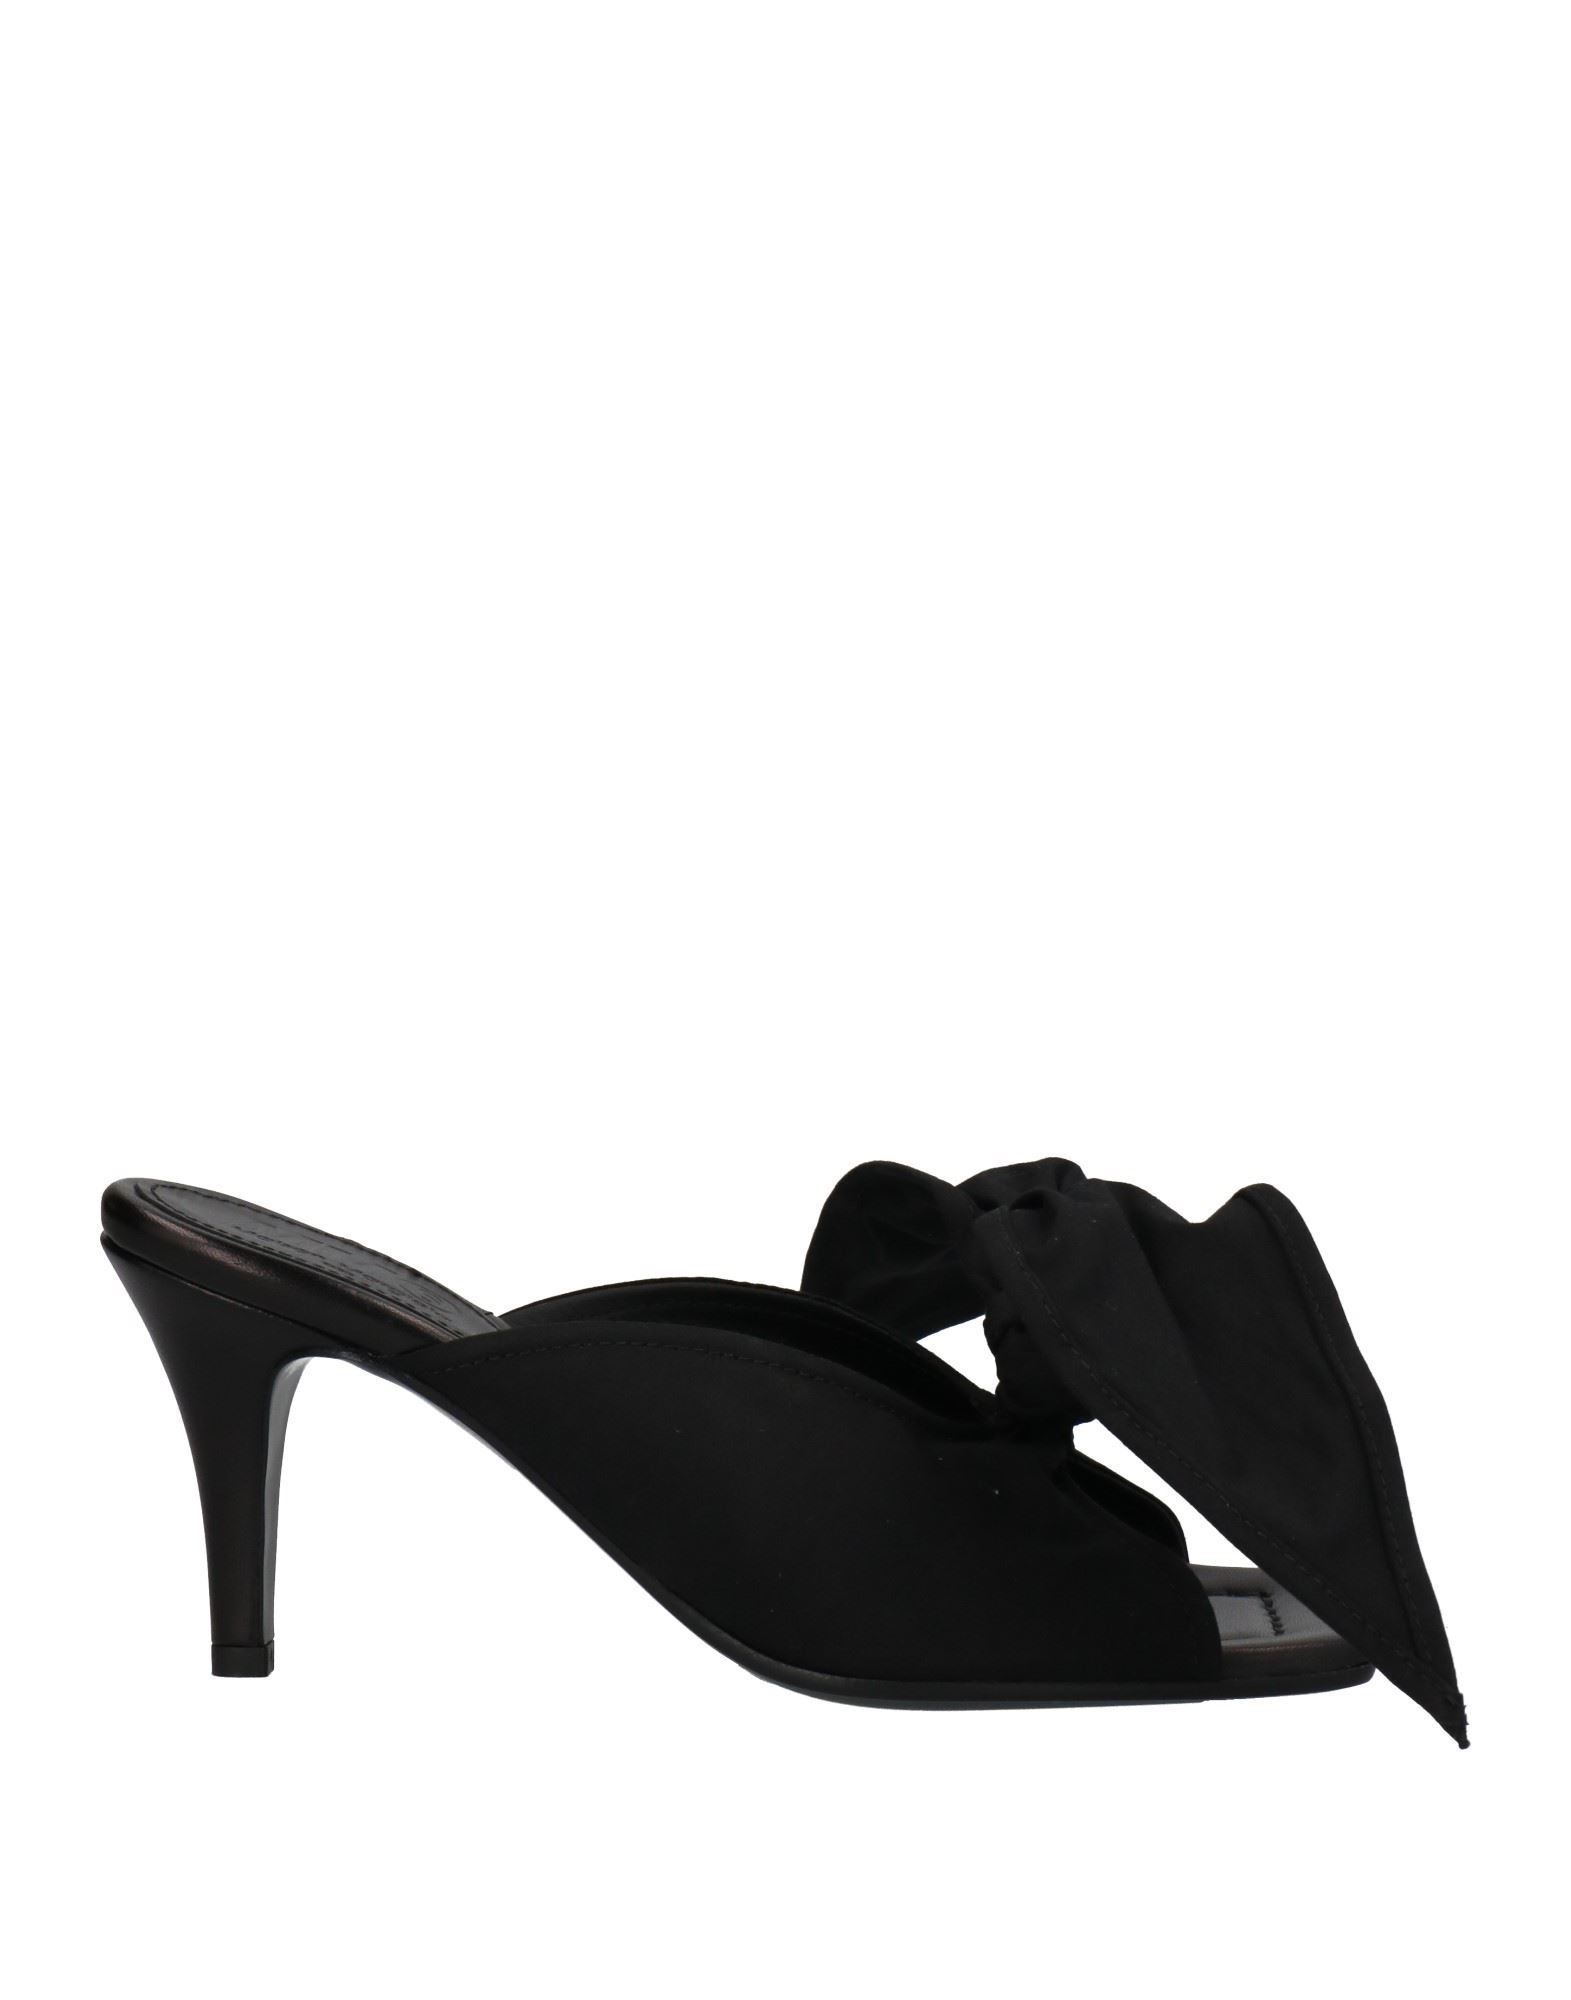 Mm6 Maison Margiela Woman Sandals Black Size 10 Textile Fibers